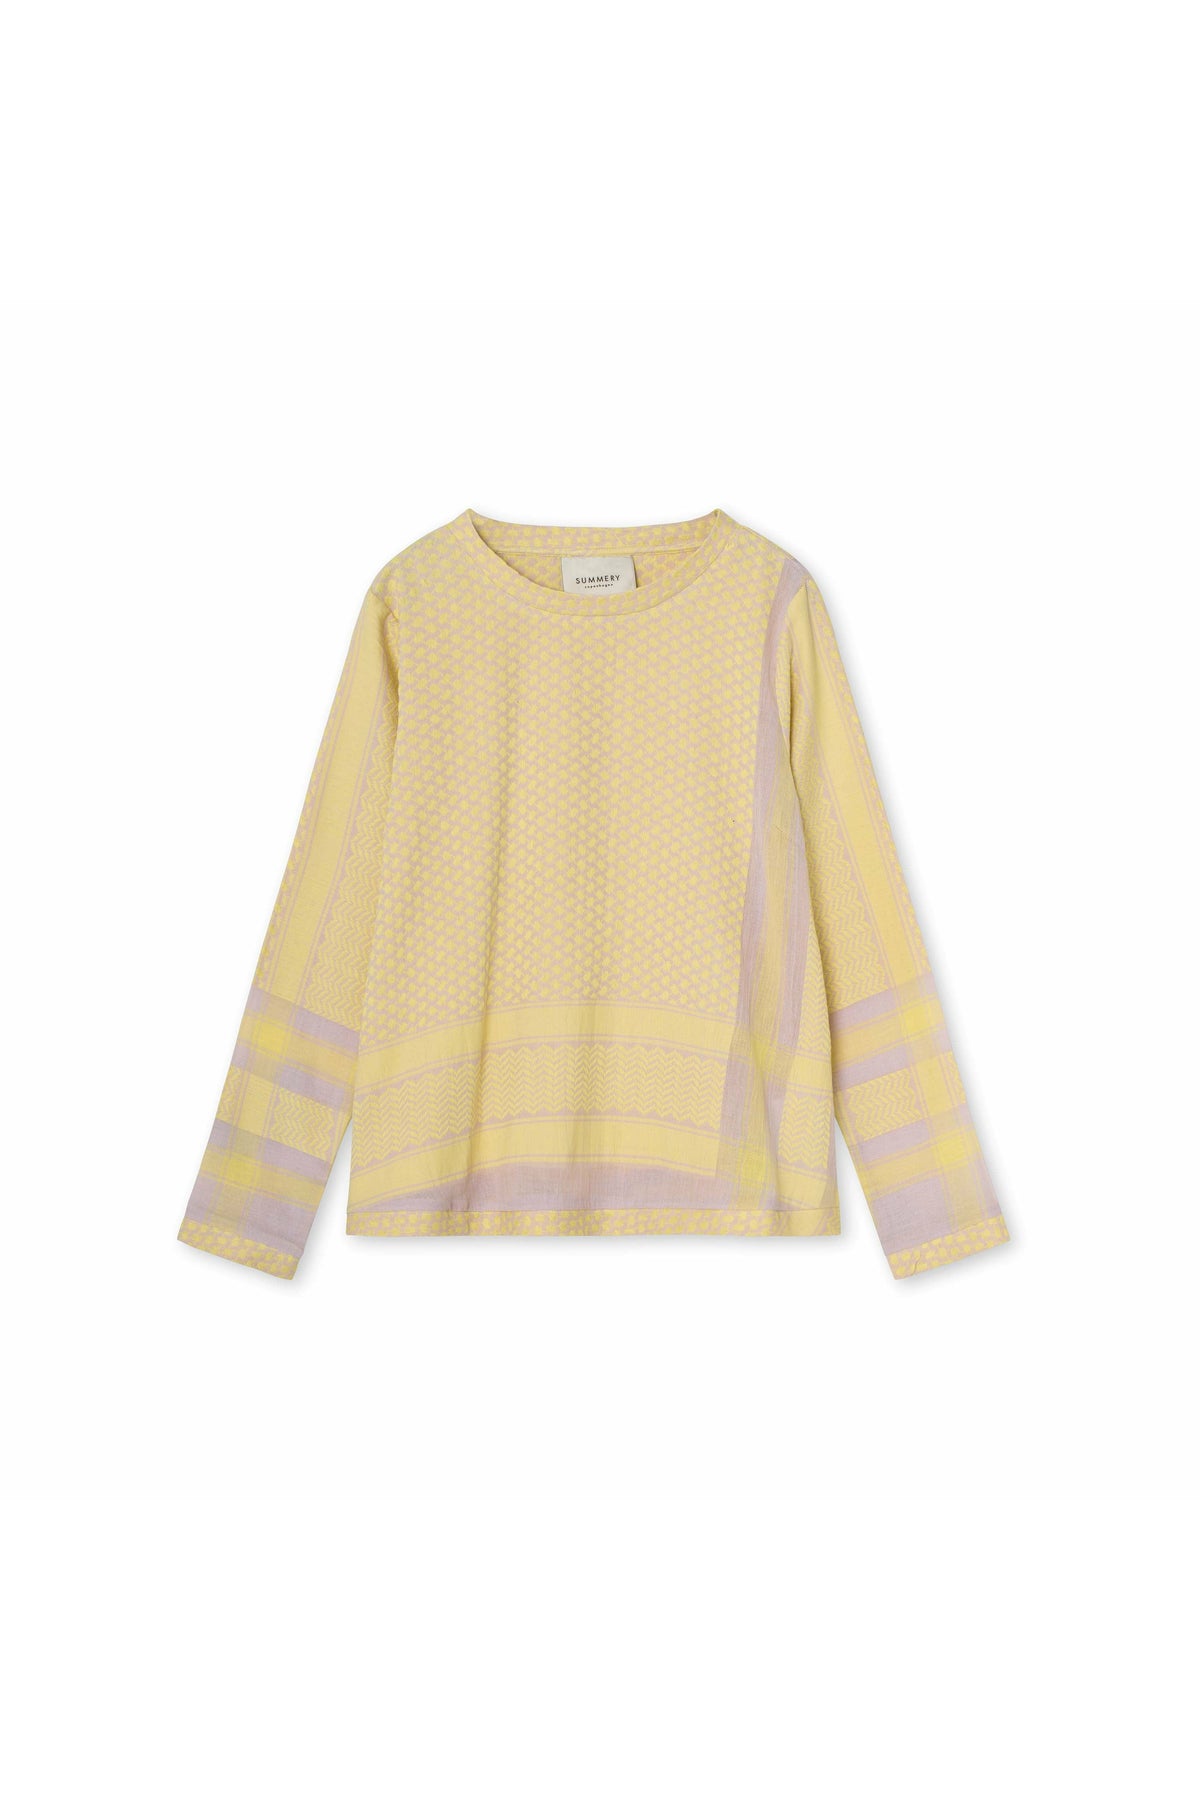 Summery Copenhagen Shirt O Long Sleeve 1008 - Lavender Fog/Lemonade - Escape